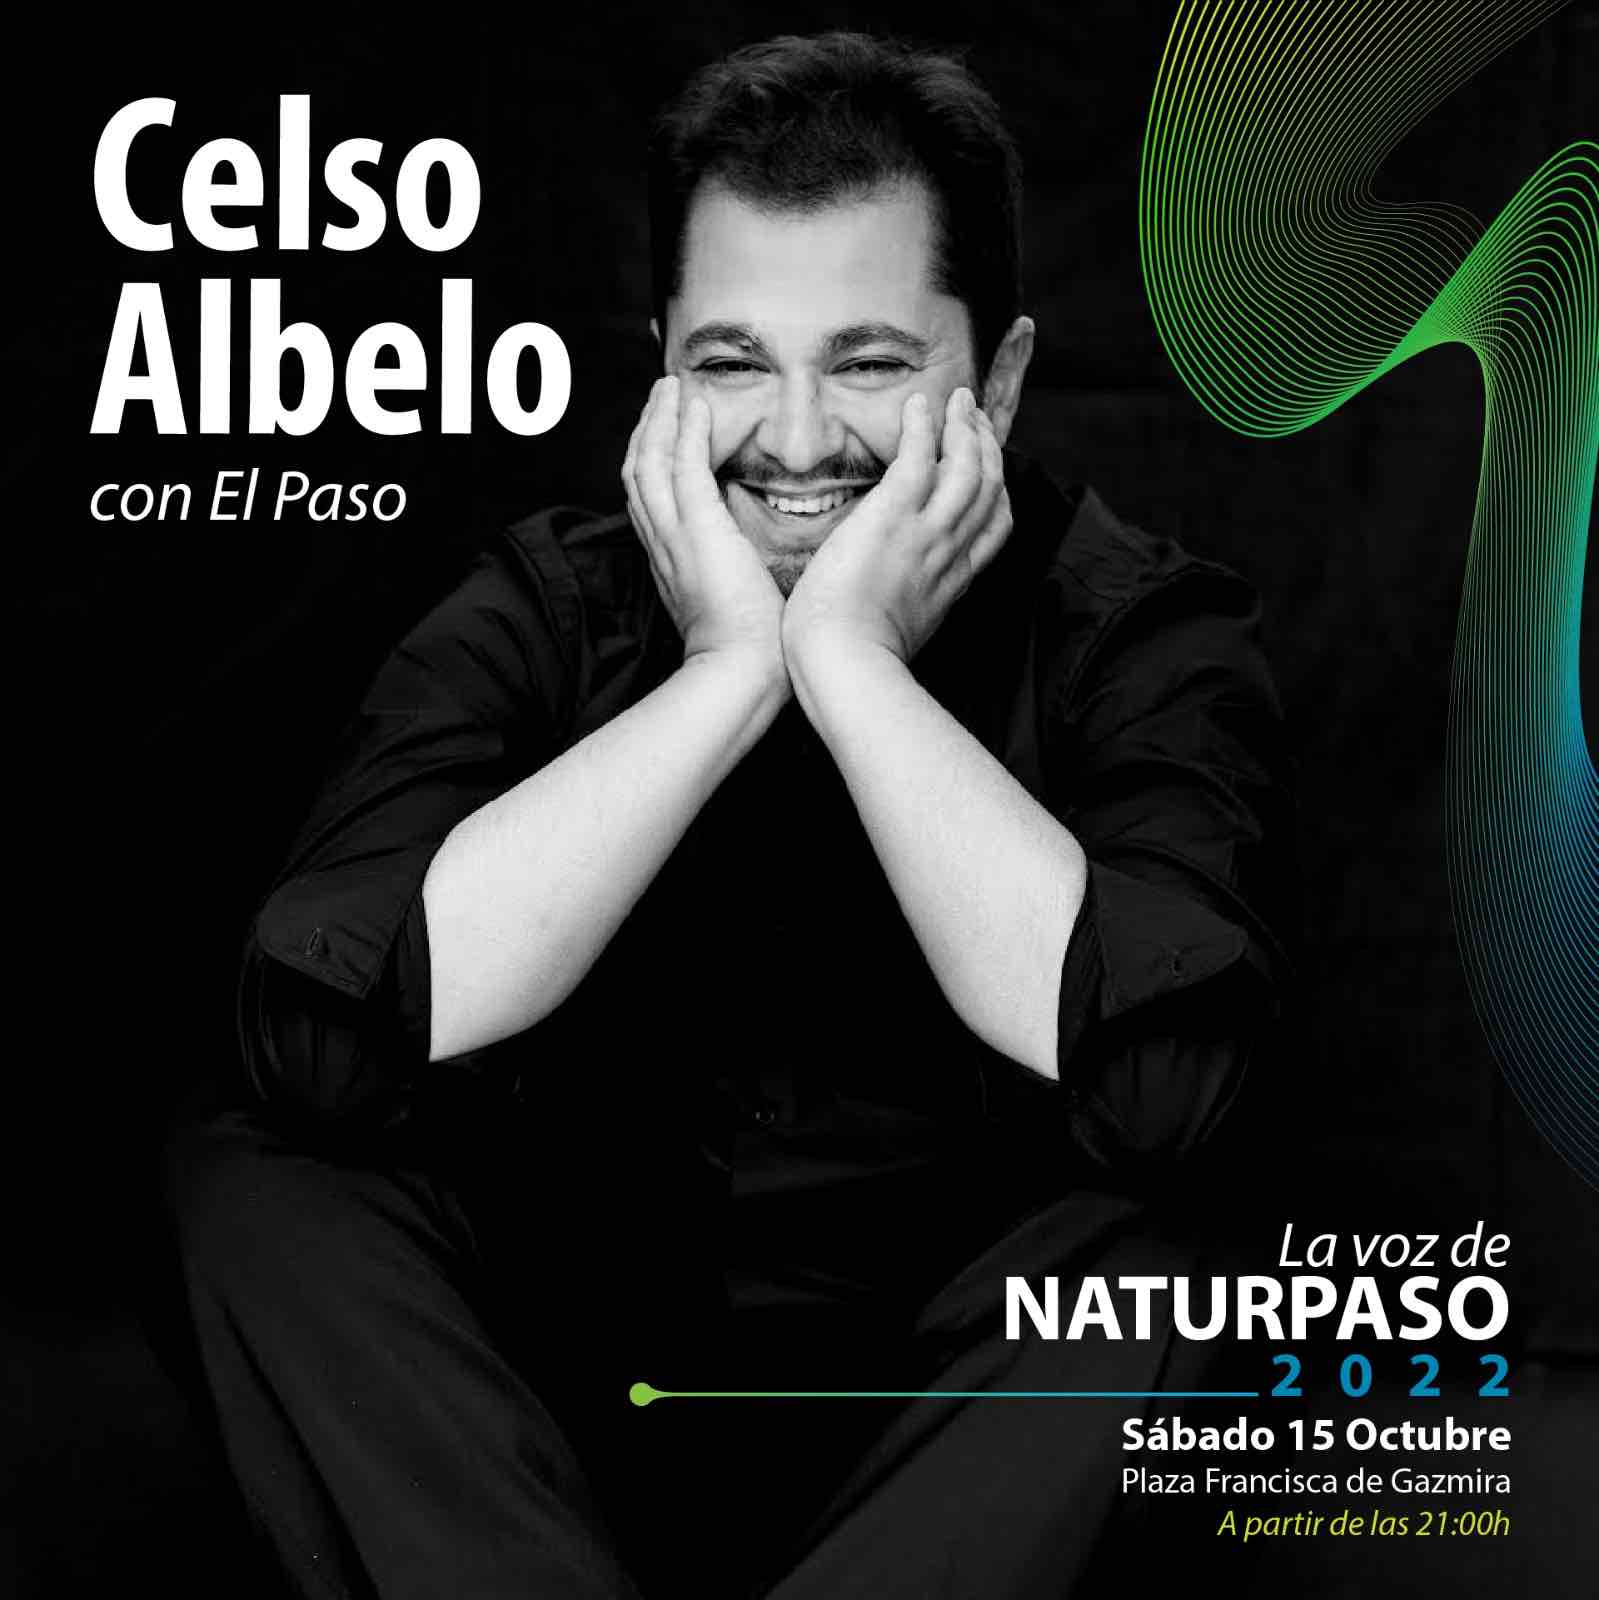 Celso Albelo, el aclamado tenor canario, ofrecerá un recital este sábado 15 de octubre en El Paso